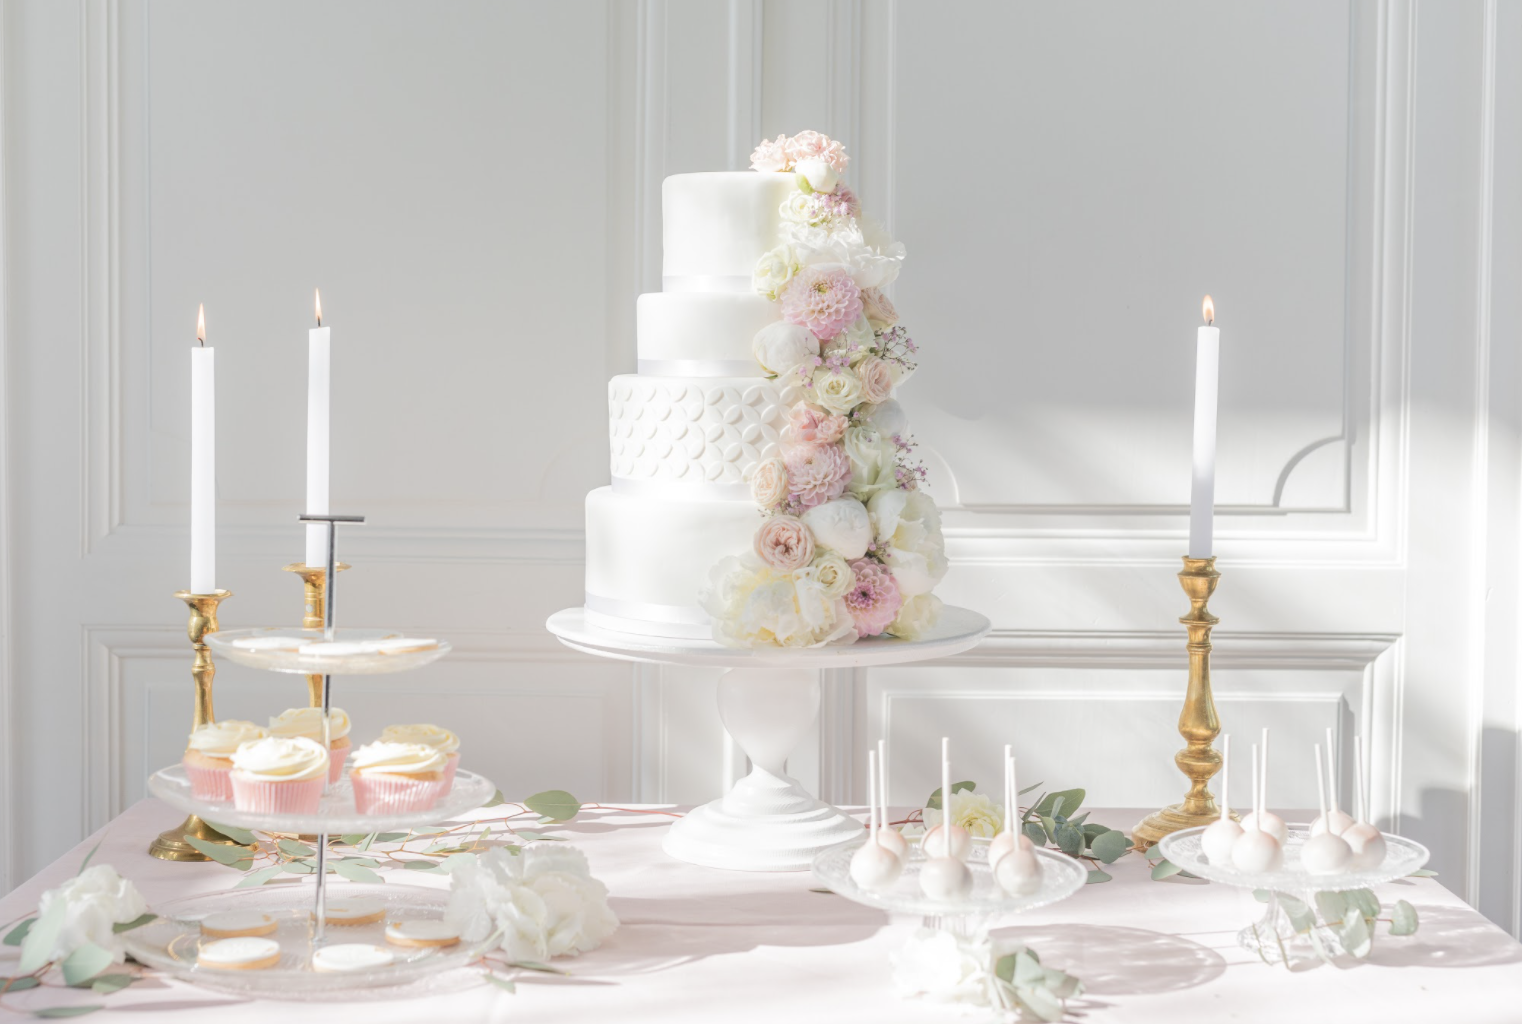 Wedding inspo cake wedding bridal cake